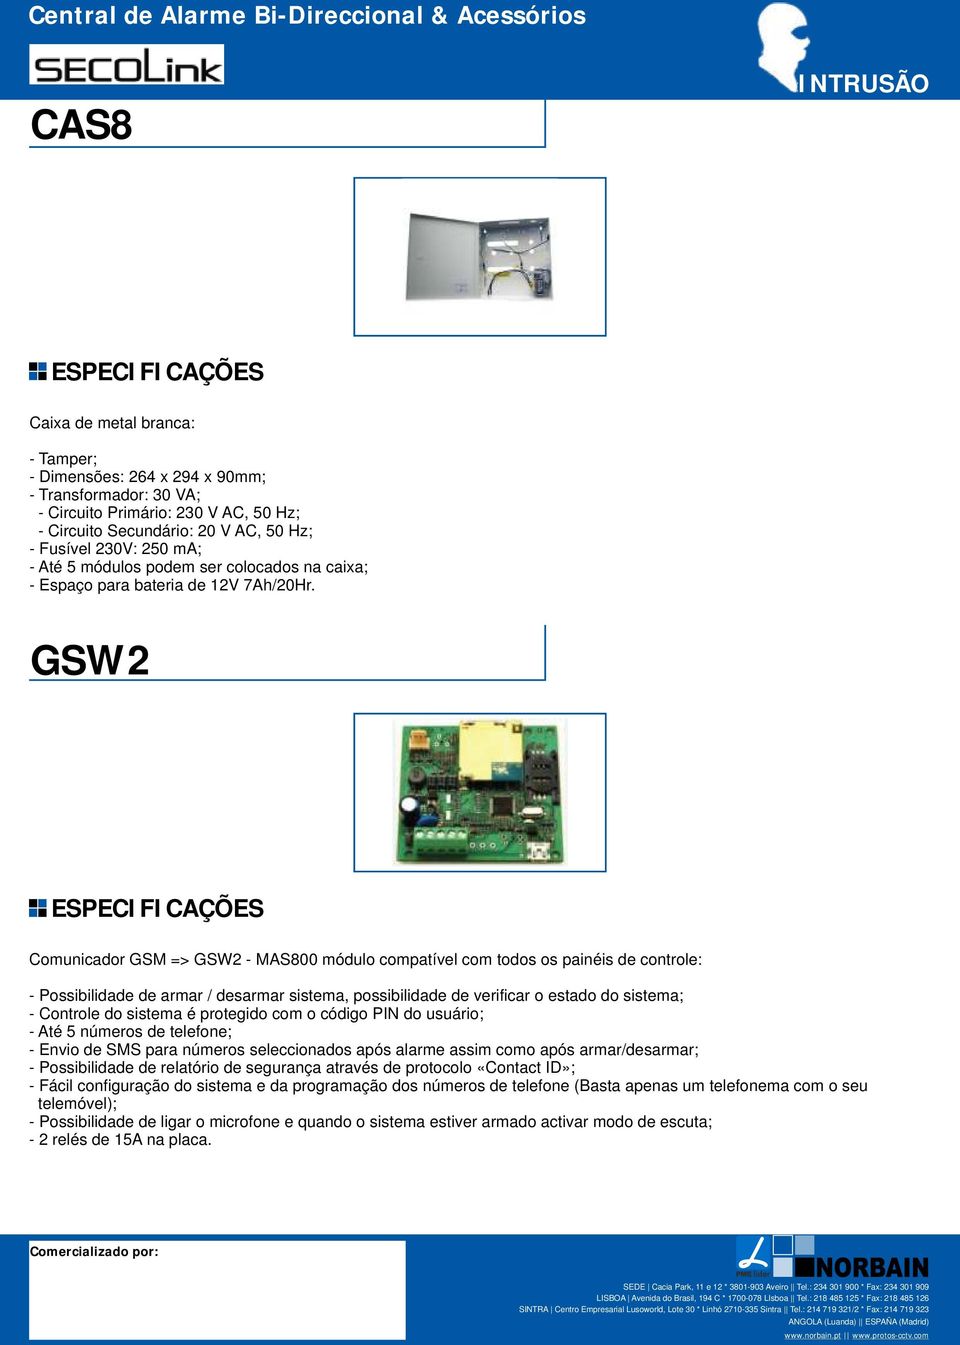 GSW2 Comunicador GSM => GSW2 - MAS800 módulo compatível com todos os painéis de controle: - Possibilidade de armar / desarmar sistema, possibilidade de verificar o estado do sistema; - Controle do